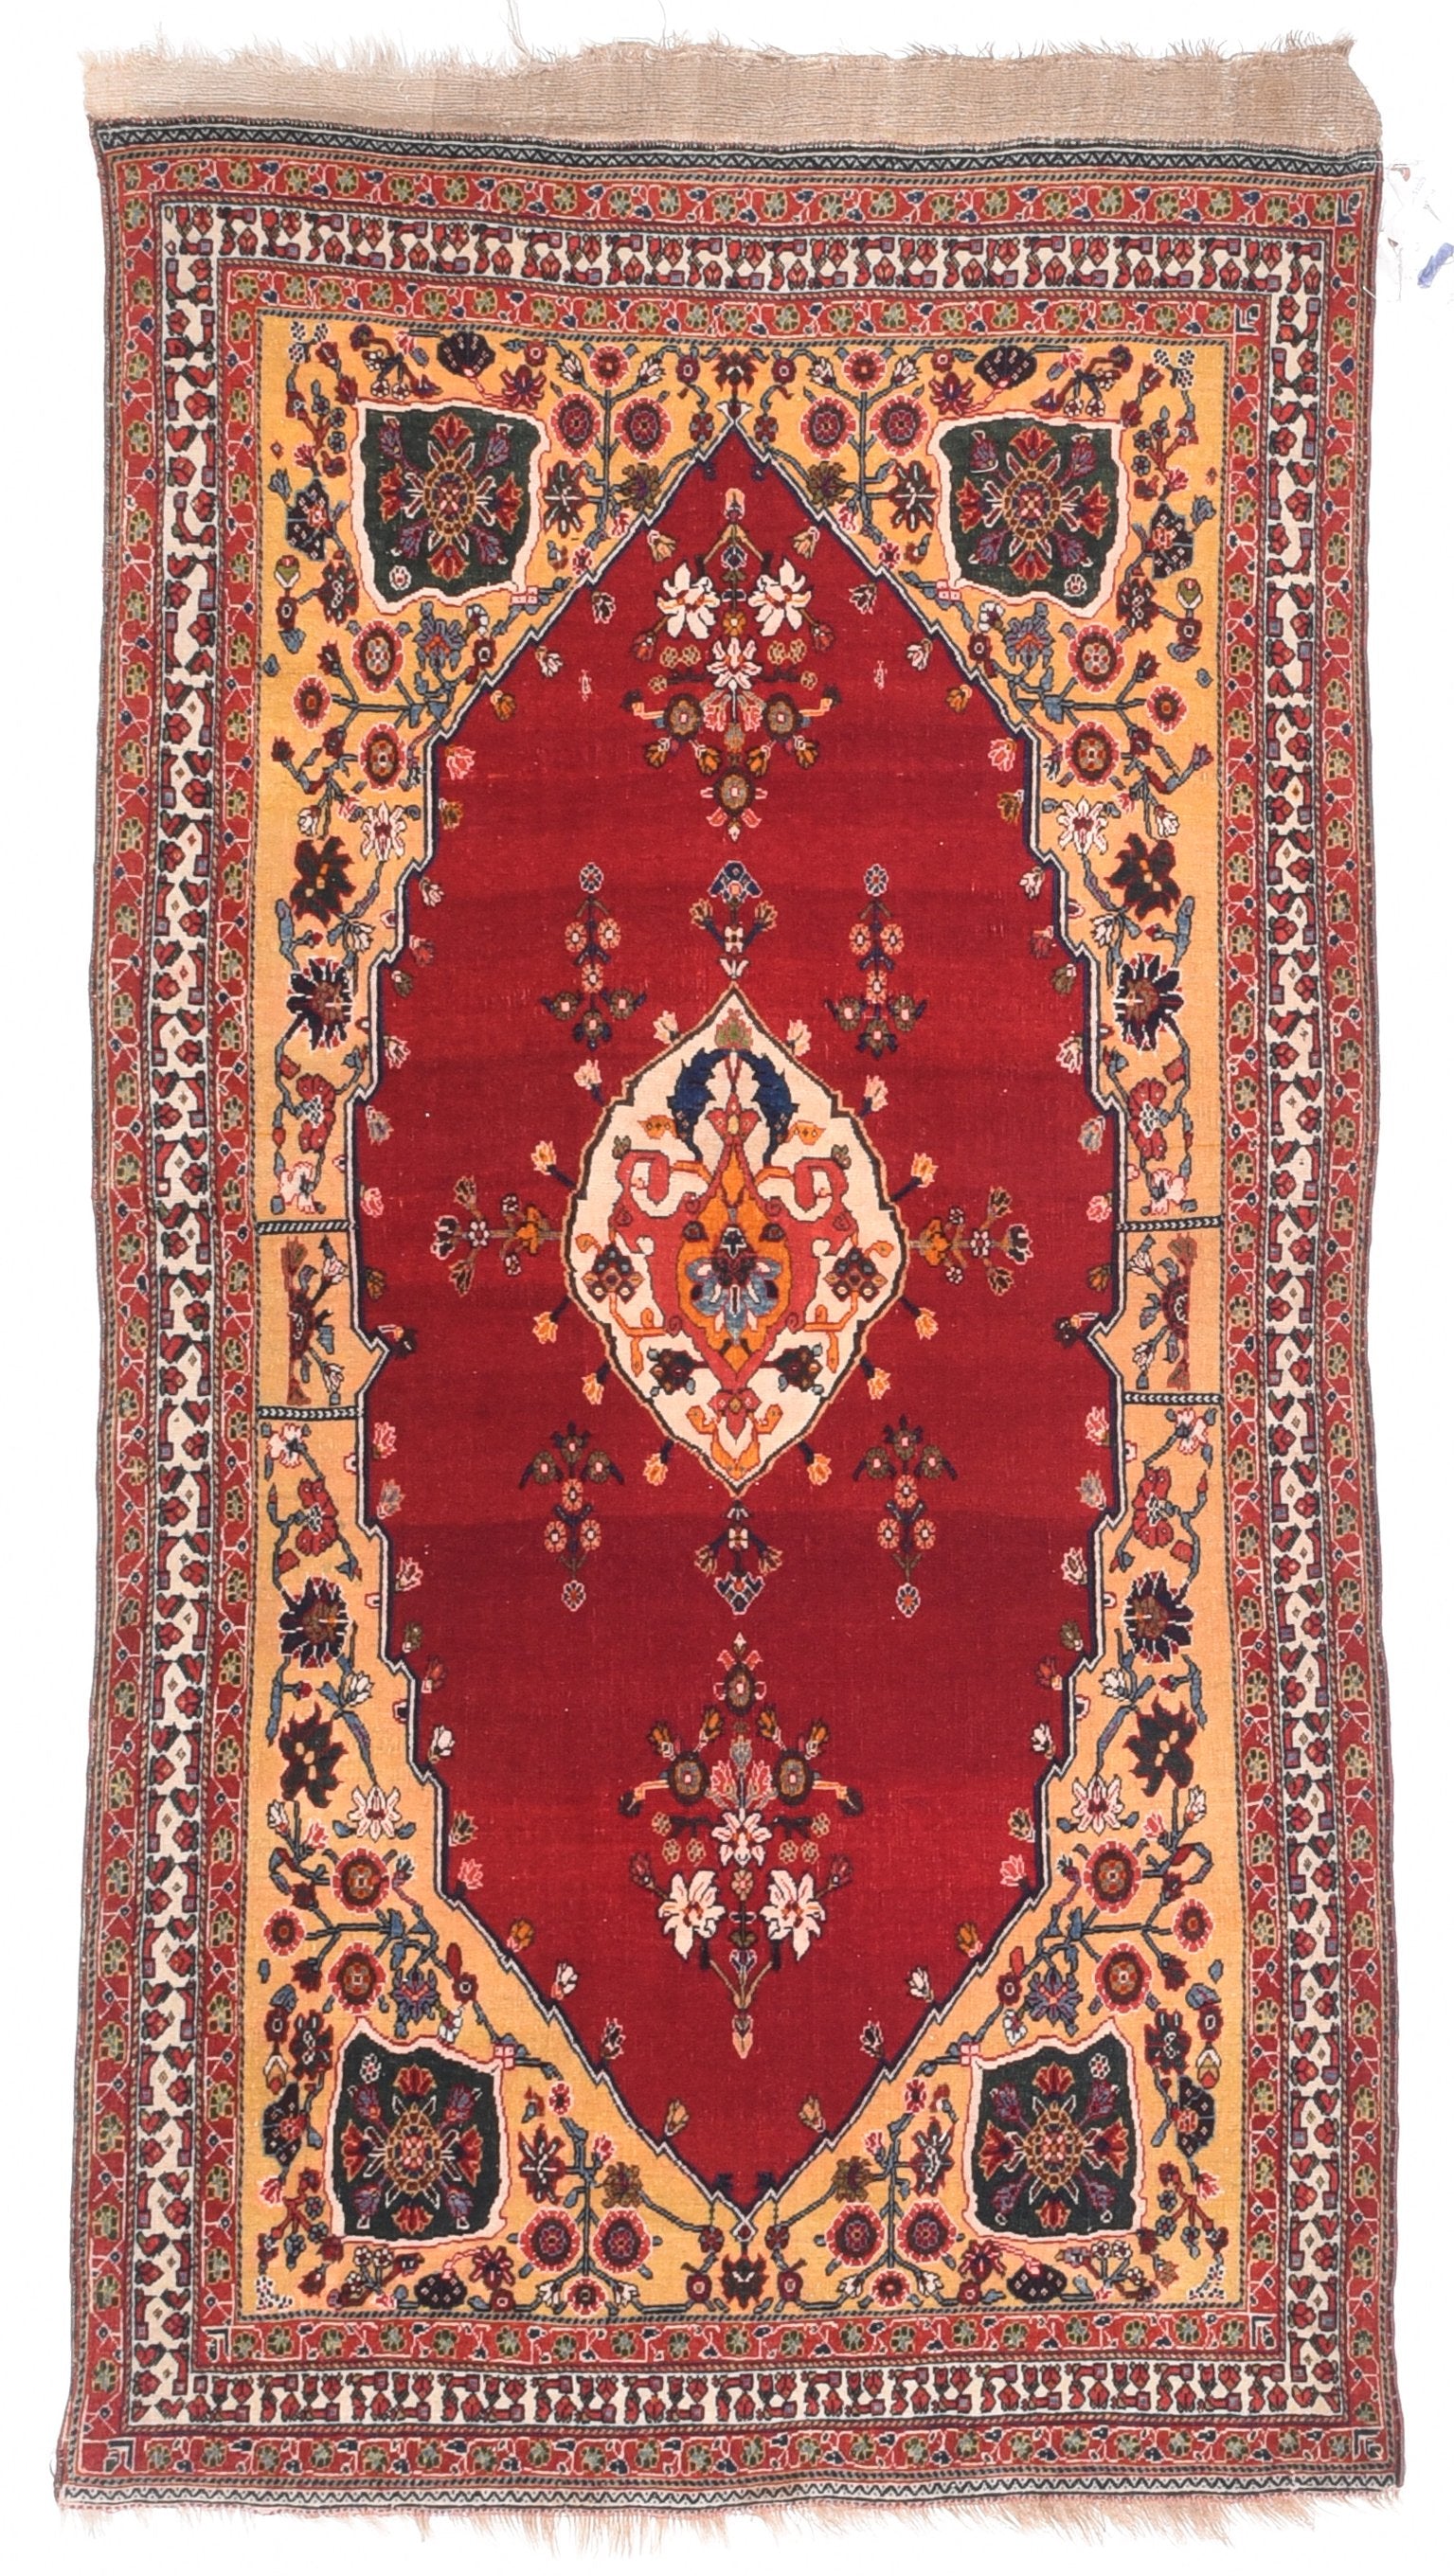 Antique Red Qushkai Persian Area Rug